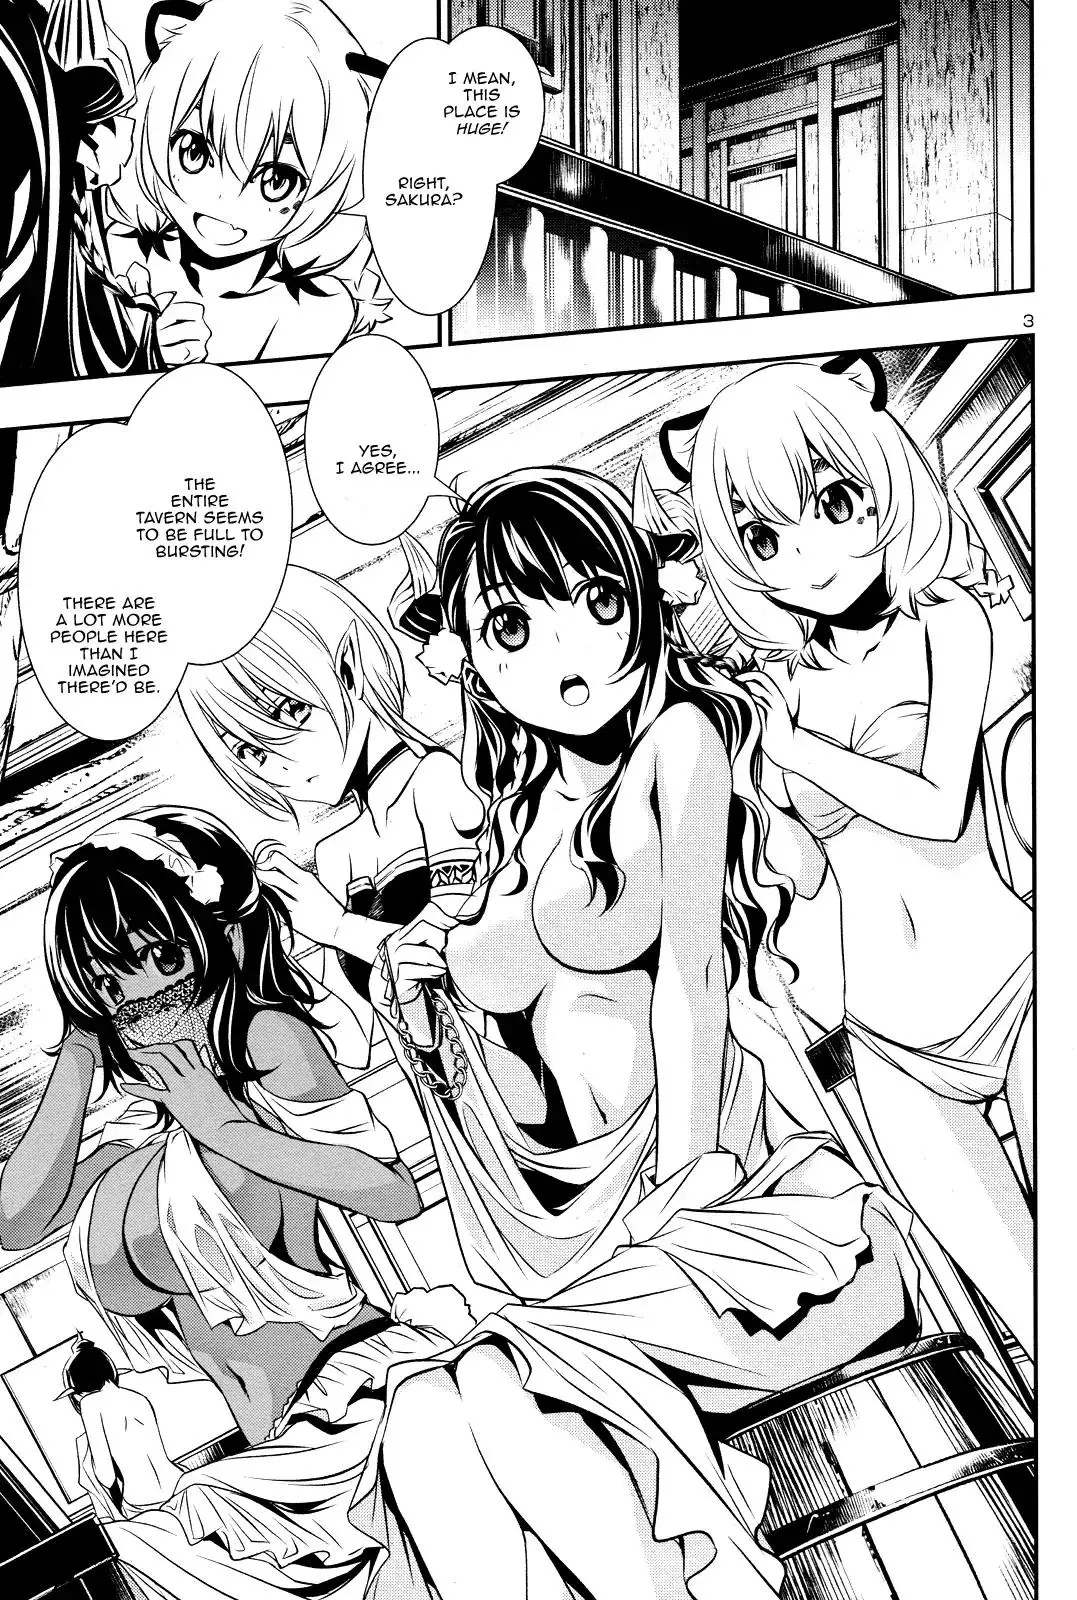 Shinju no Nectar - 15 page 1